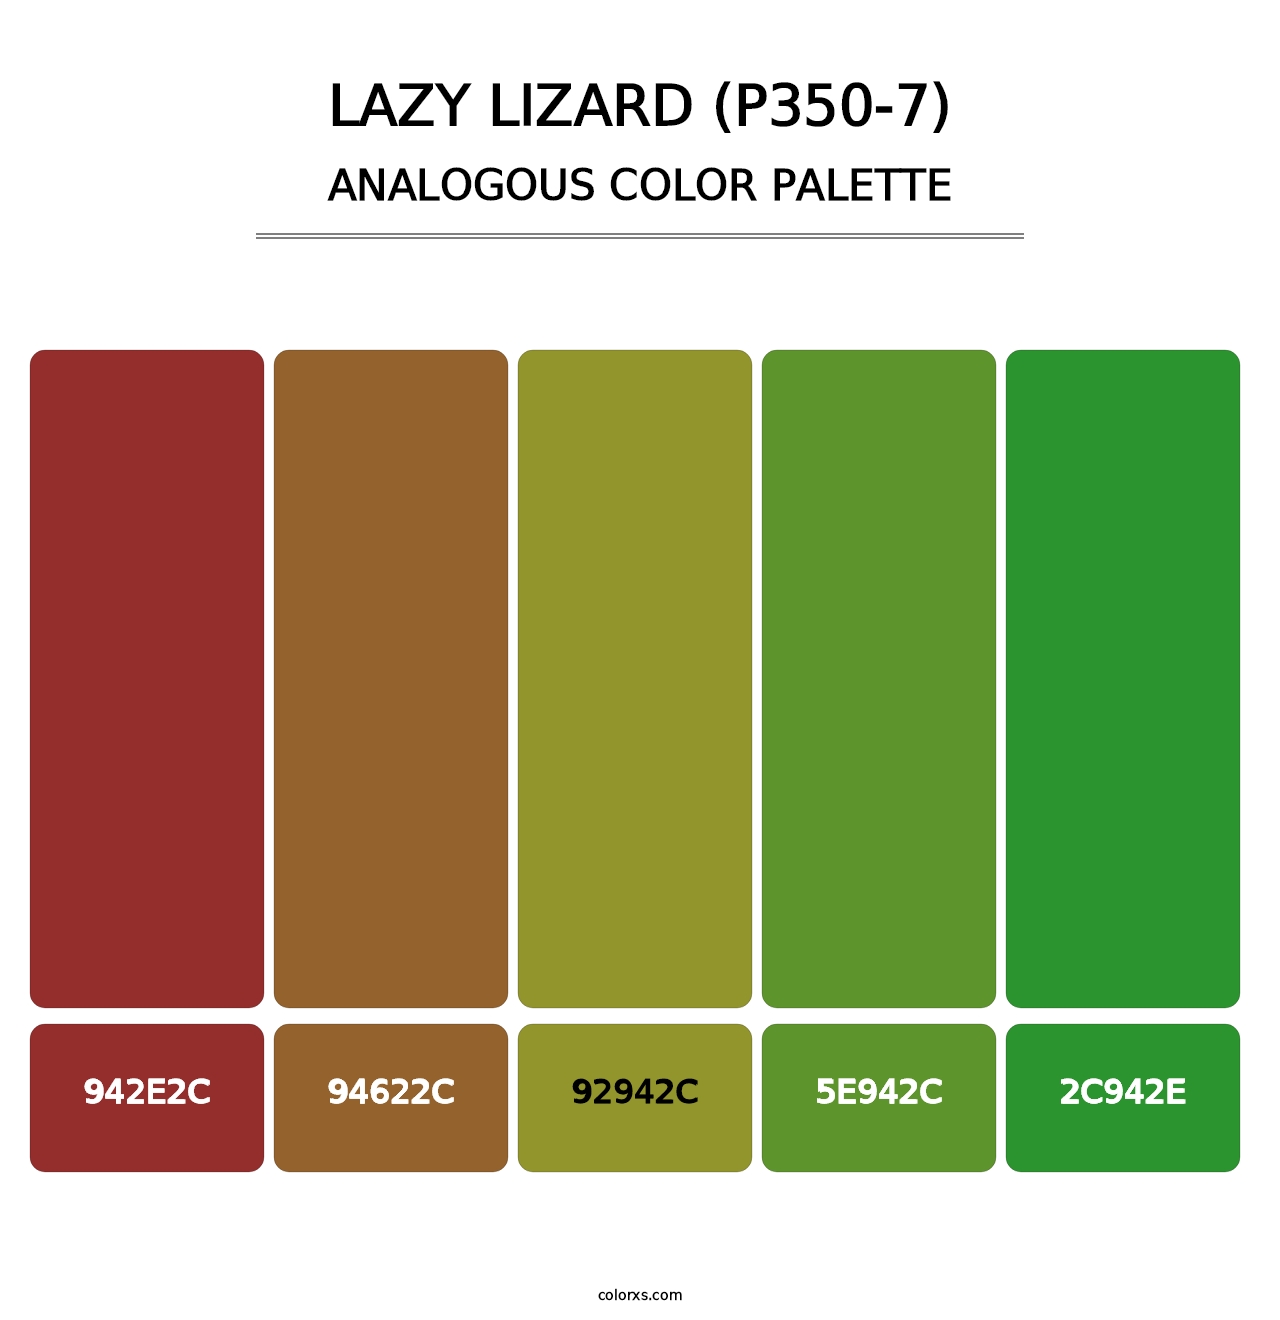 Lazy Lizard (P350-7) - Analogous Color Palette